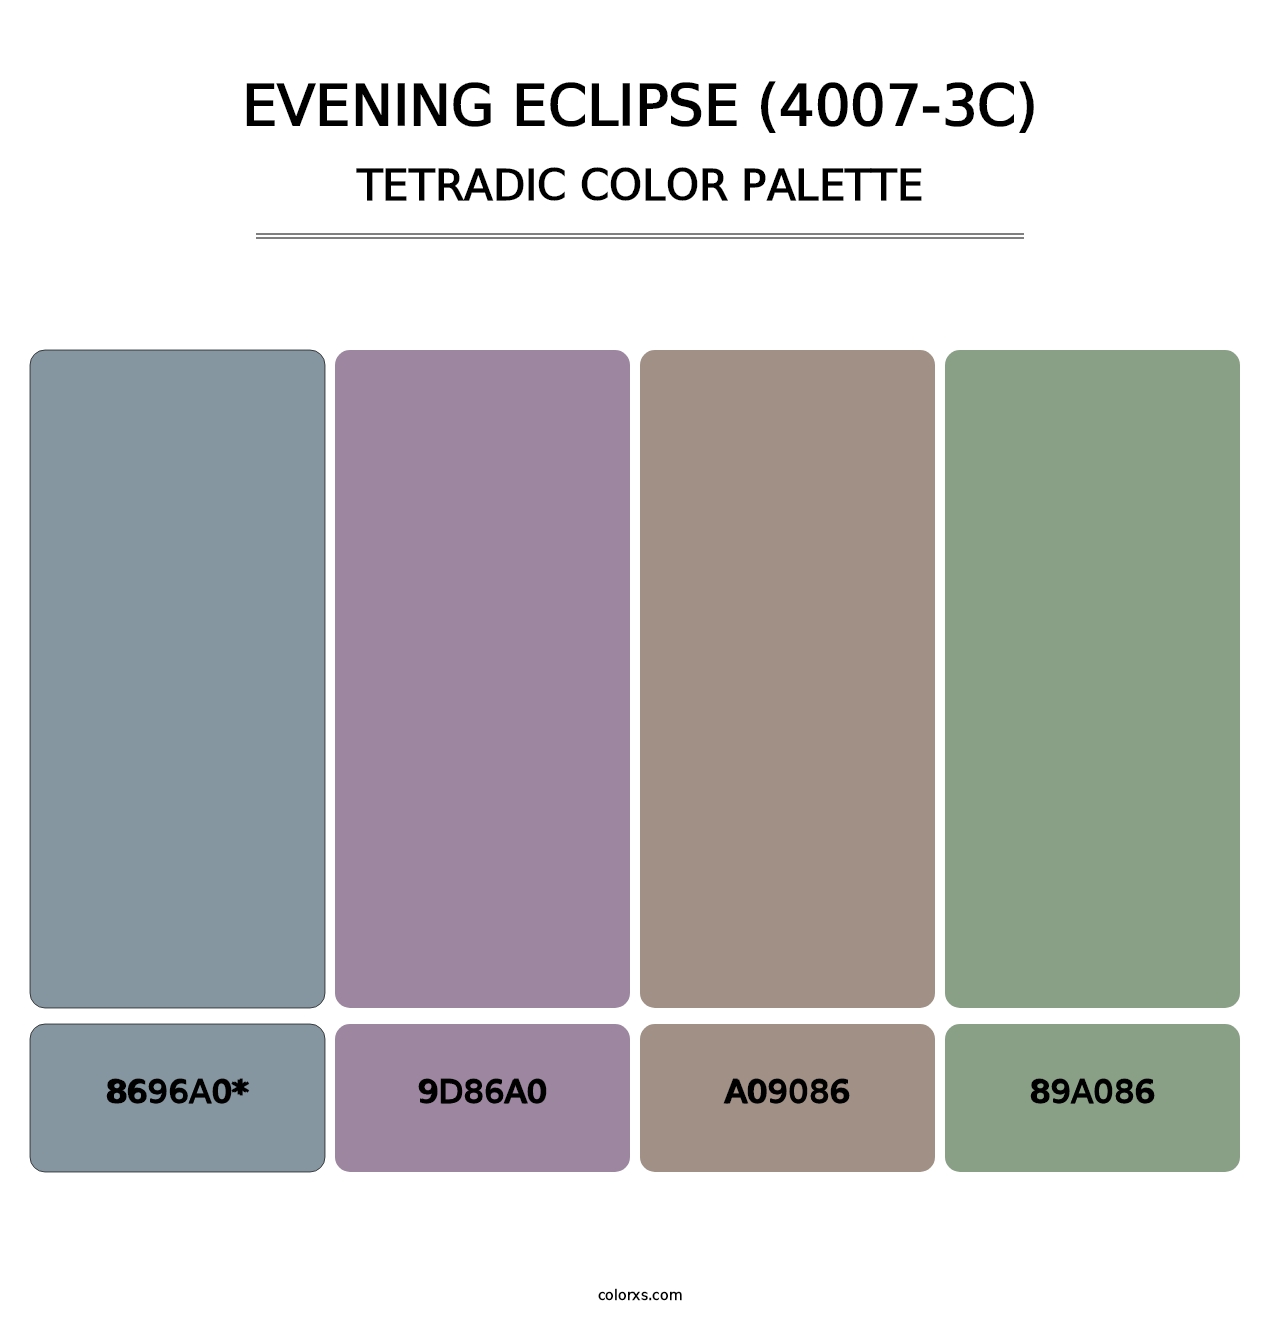 Evening Eclipse (4007-3C) - Tetradic Color Palette